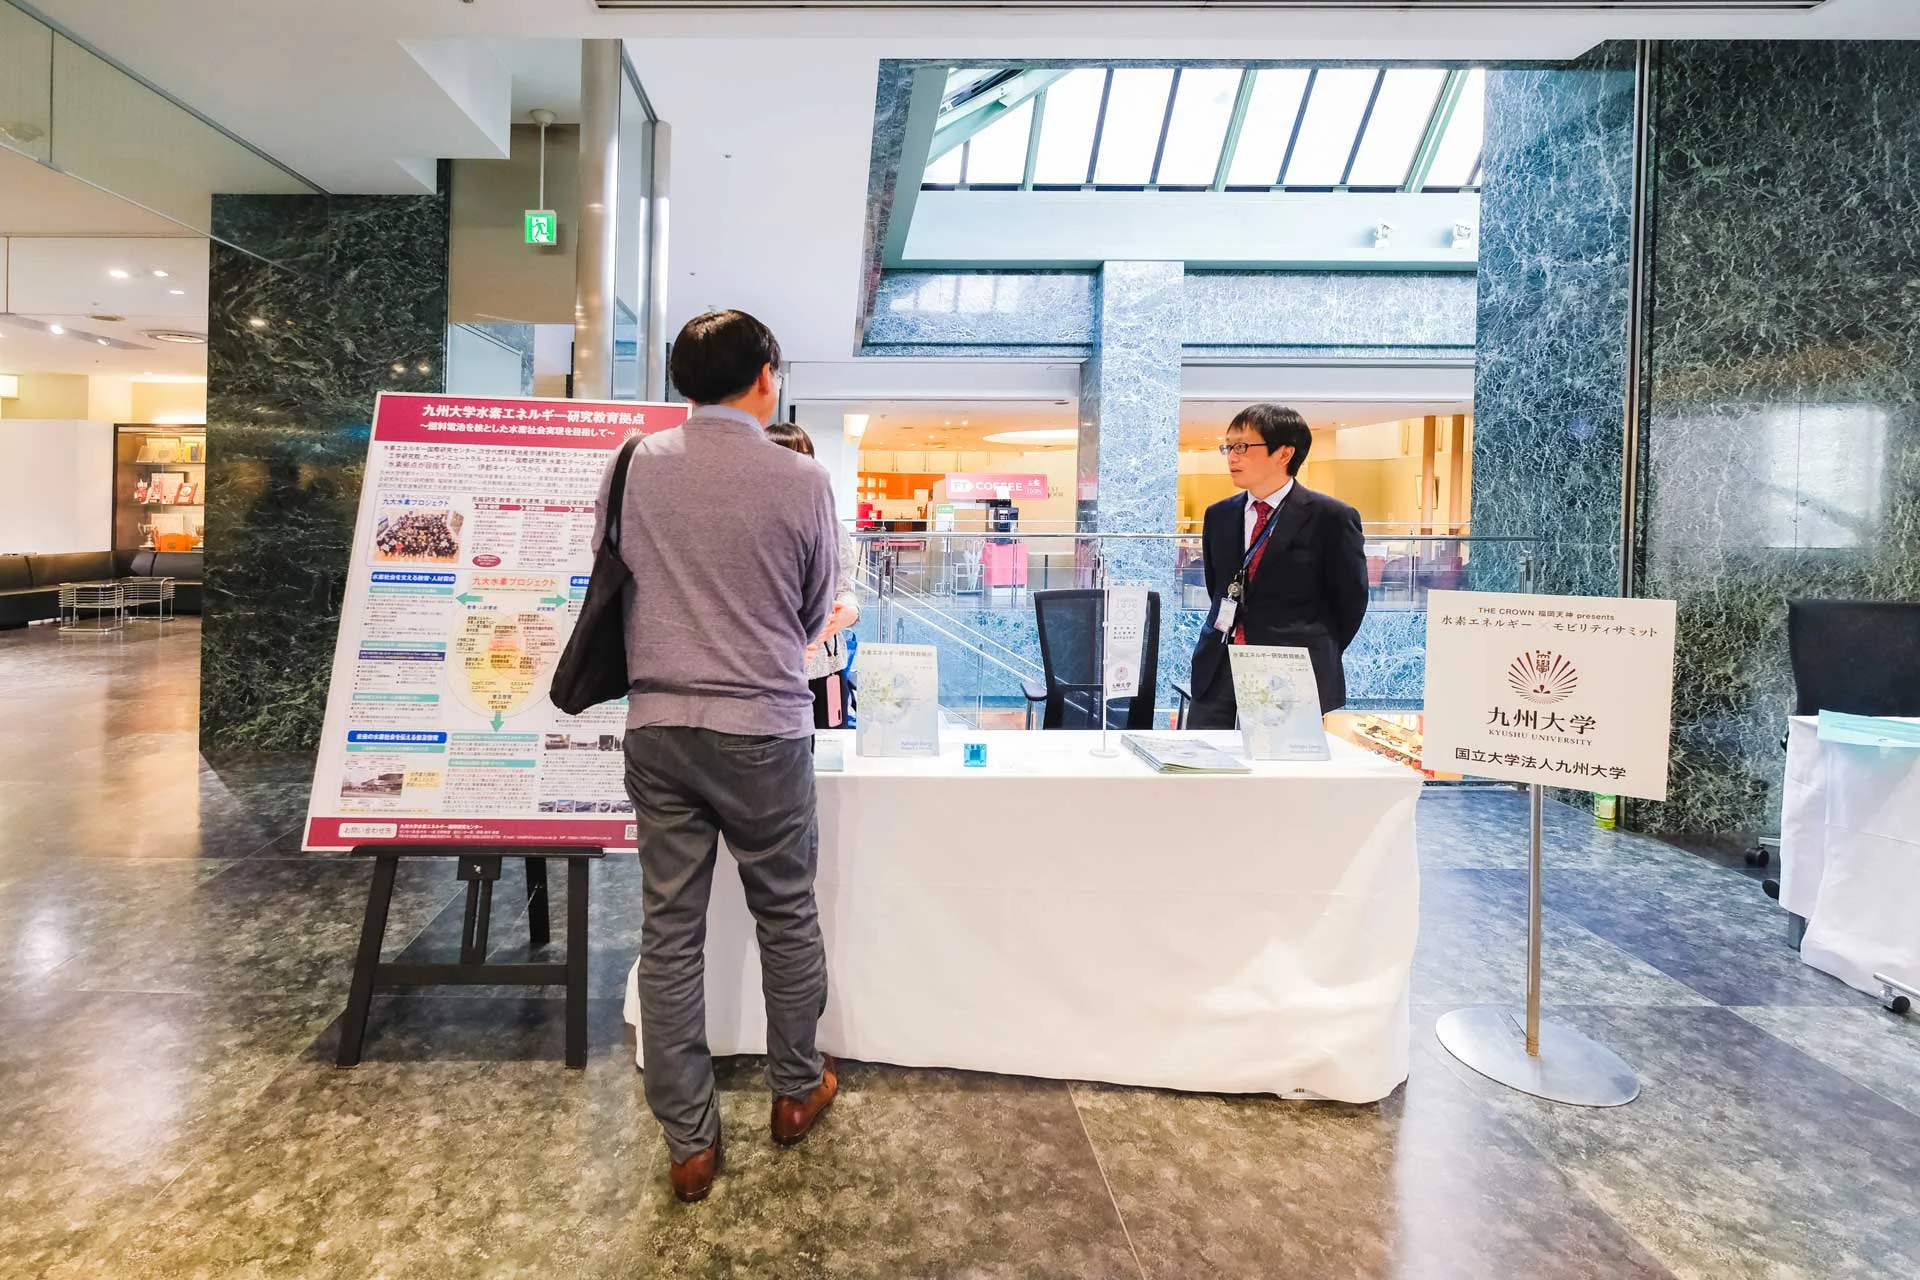 九州大学は産官学地域連携で水素利用社会の実現を目指す『九大水素プロジェクト』の取り組み内容について出展いただいた。